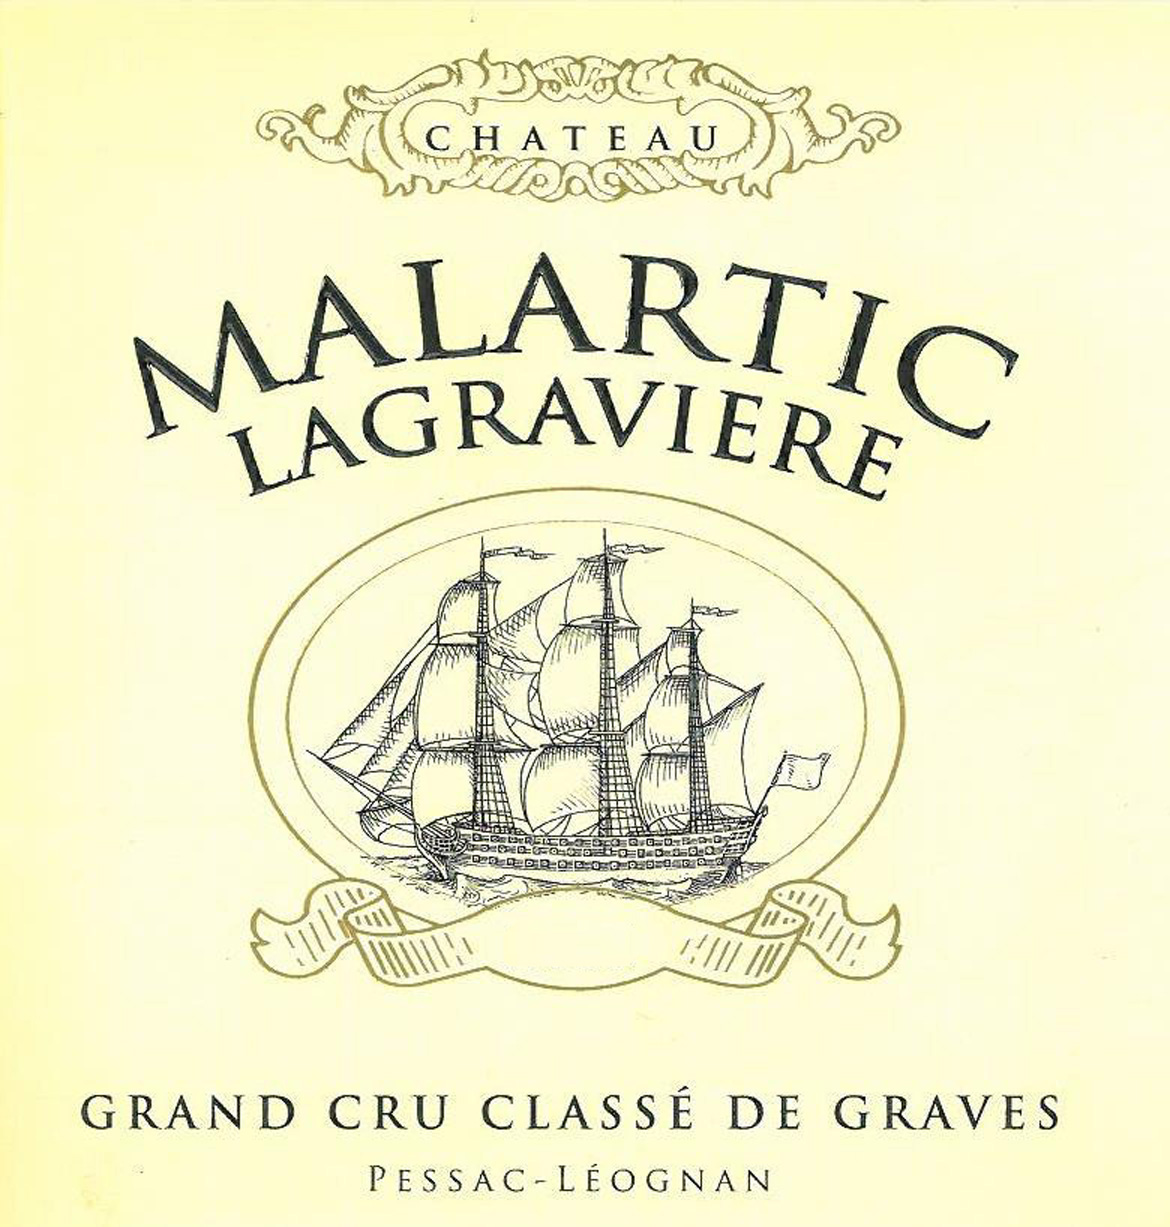 Chateau Malartic Lagraviere label